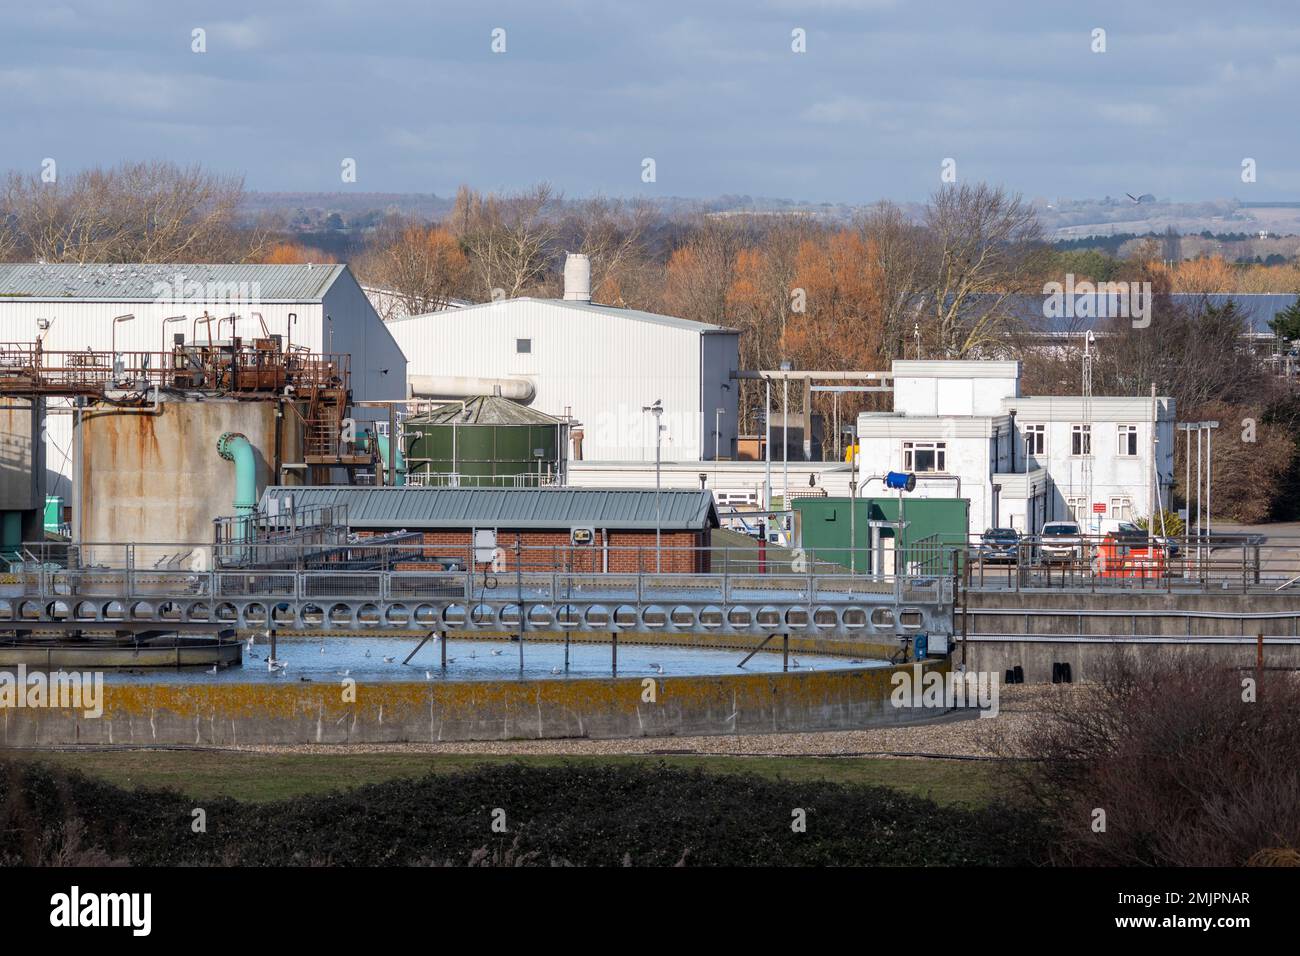 Budds Farm Wastewater Treatment Works, usine de traitement des eaux usées de Southern Water, dans le port de Langstone, près de Havant, Hampshire, Angleterre, Royaume-Uni Banque D'Images